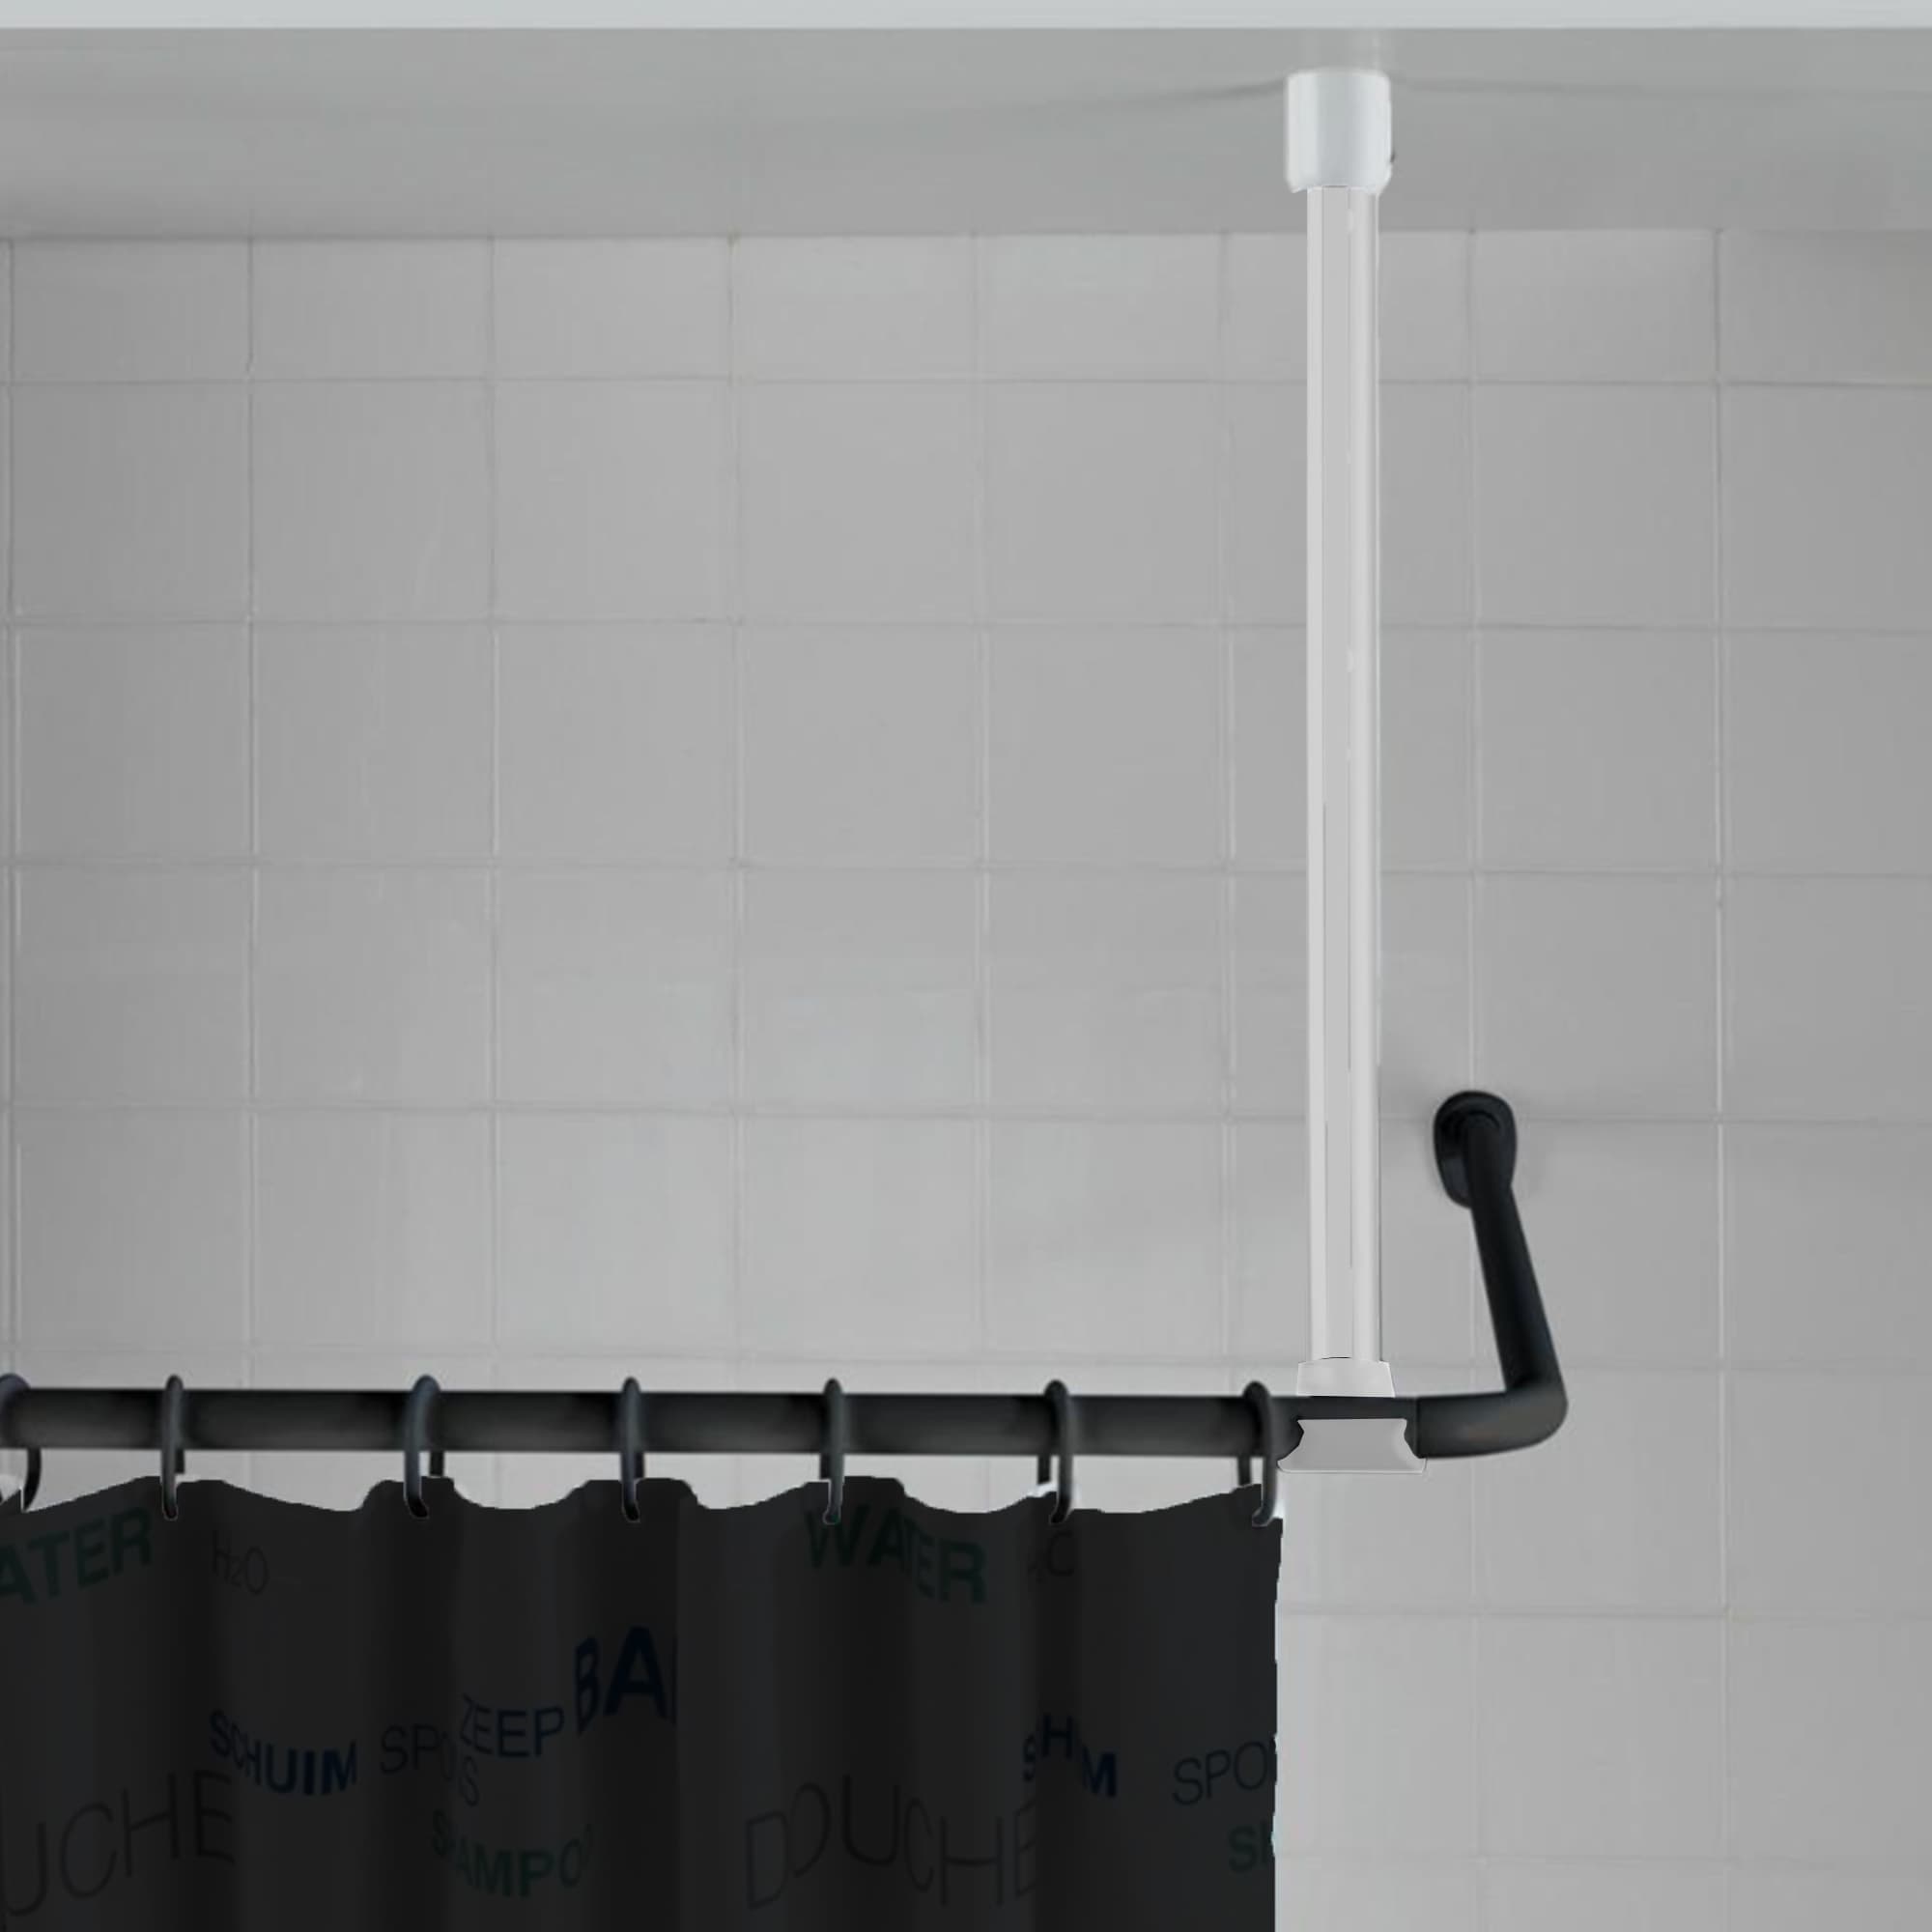 Soporte de techo blanco instalado, sosteniendo una cortina de ducha negra con texto estampado contra una pared de azulejos blancos